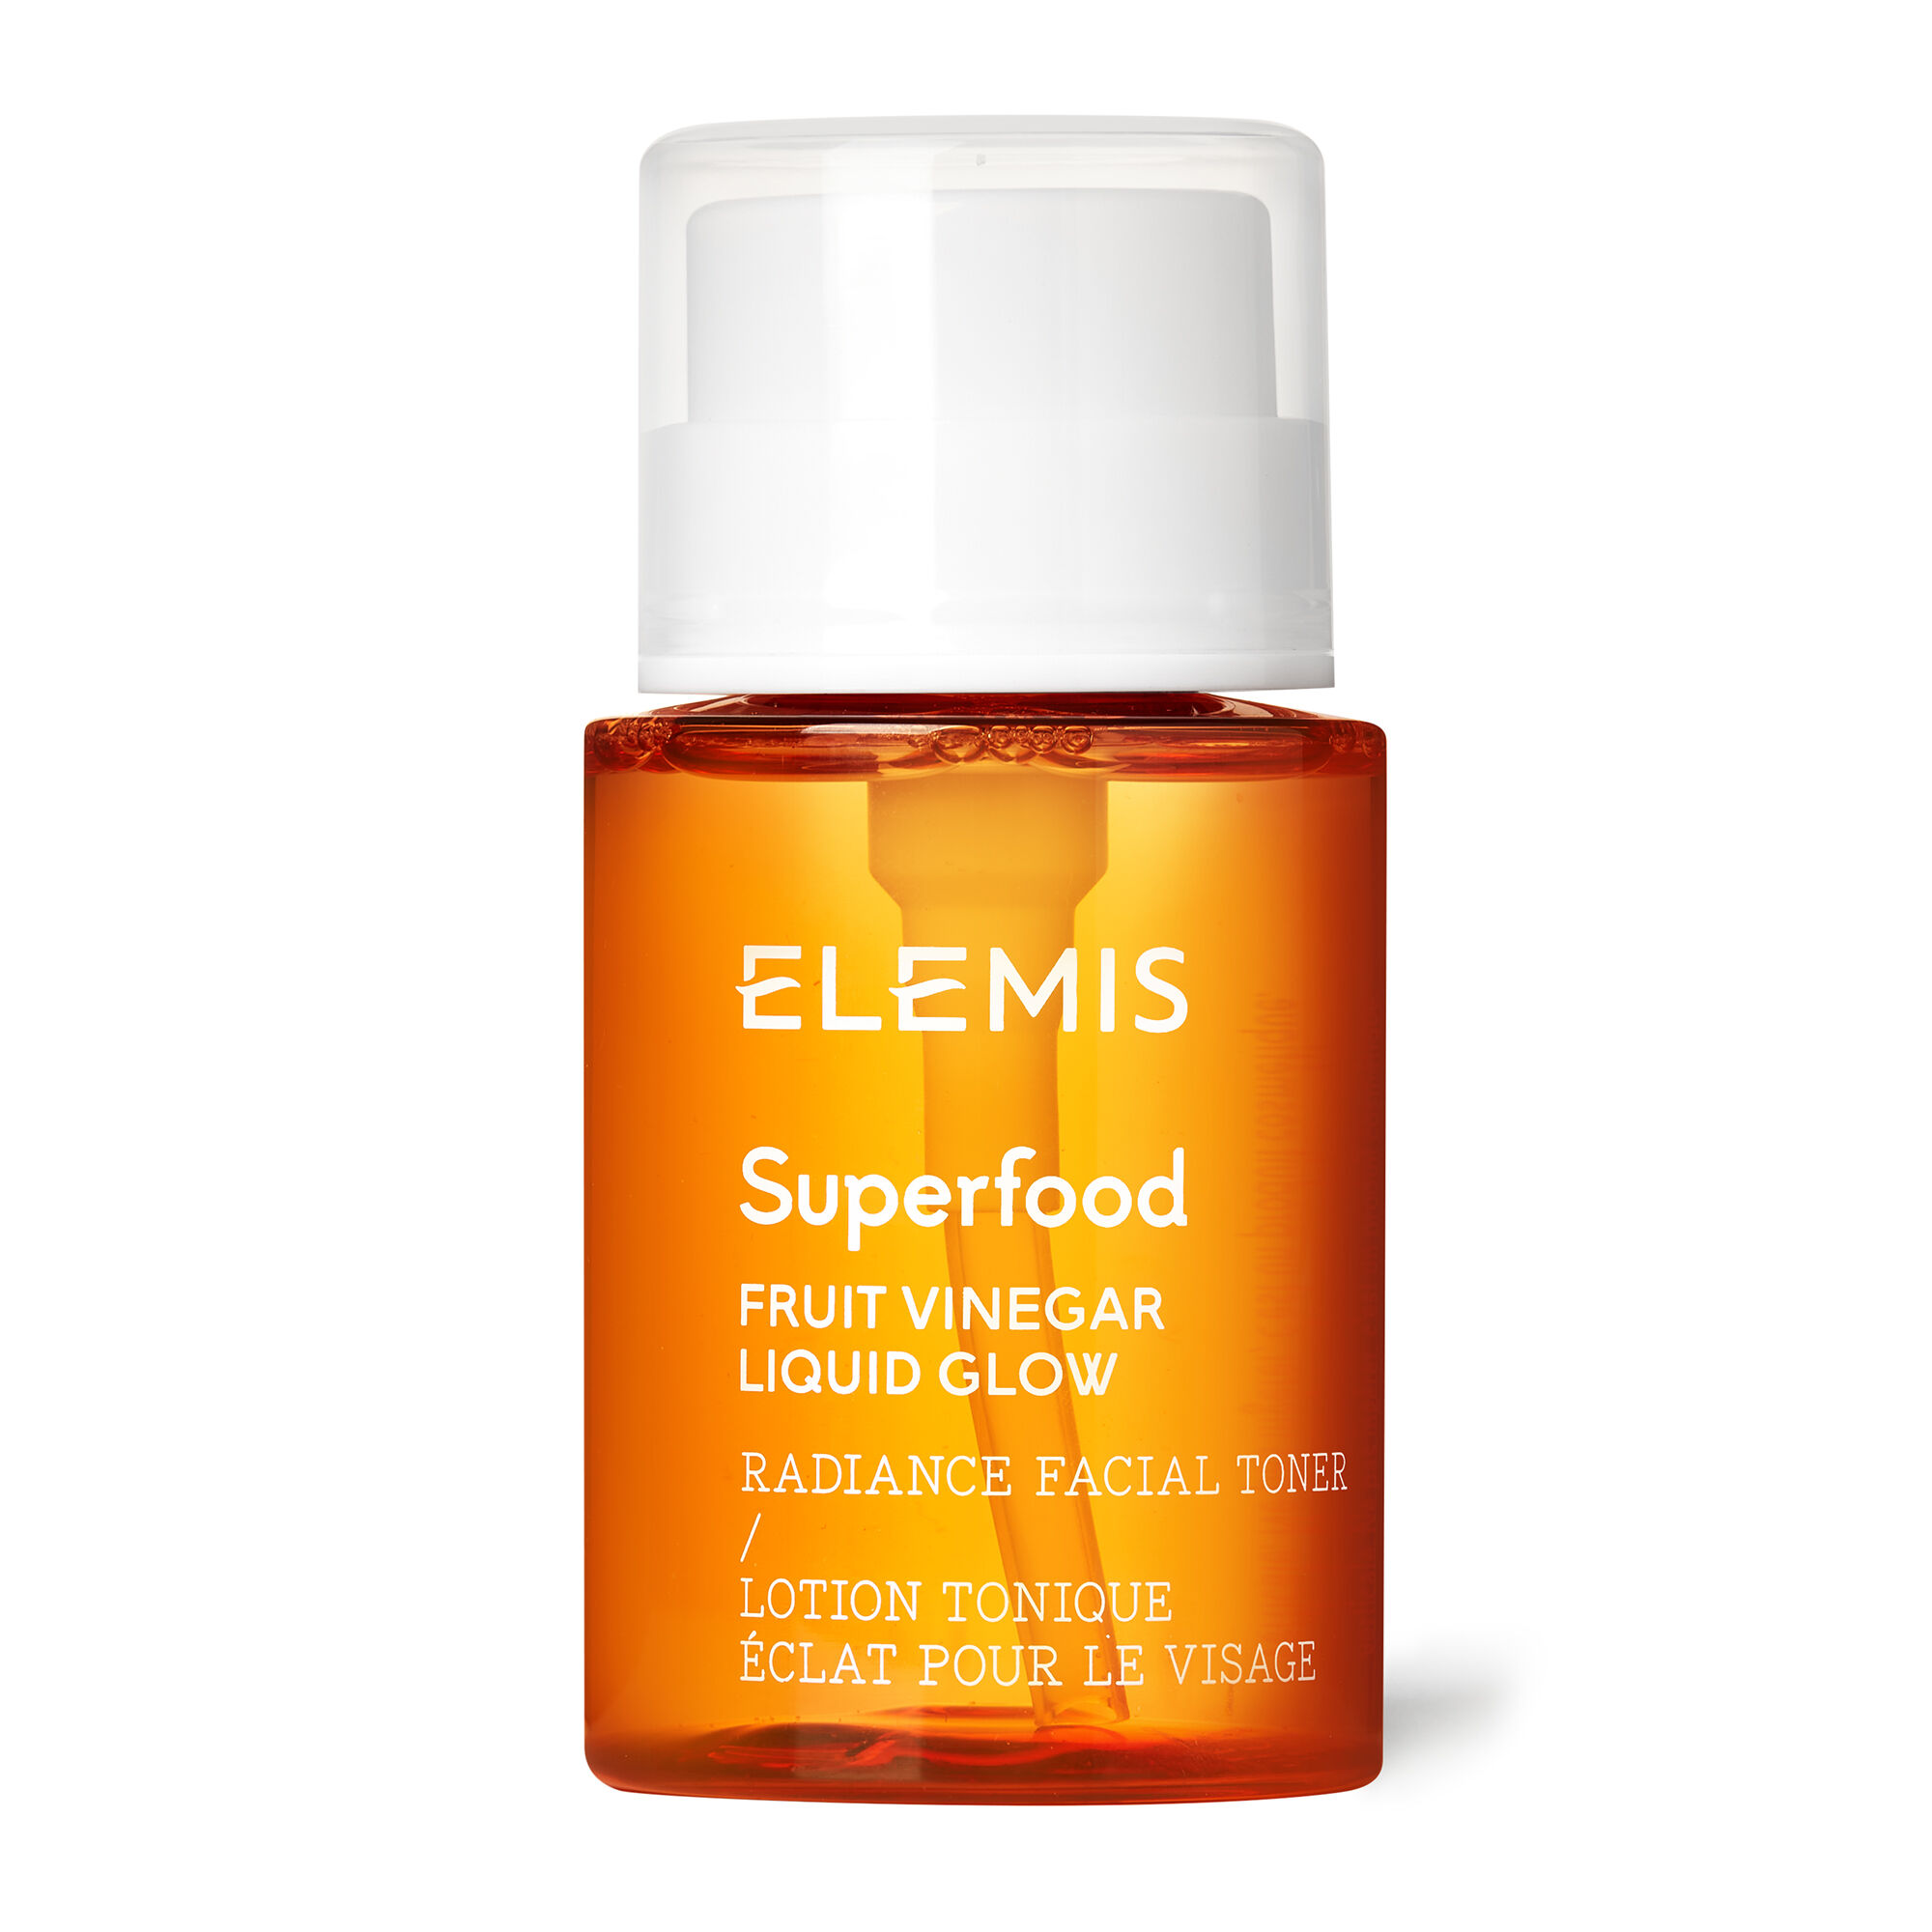 ELEMIS - Superfood Fruit Vinegar Liquid Glow